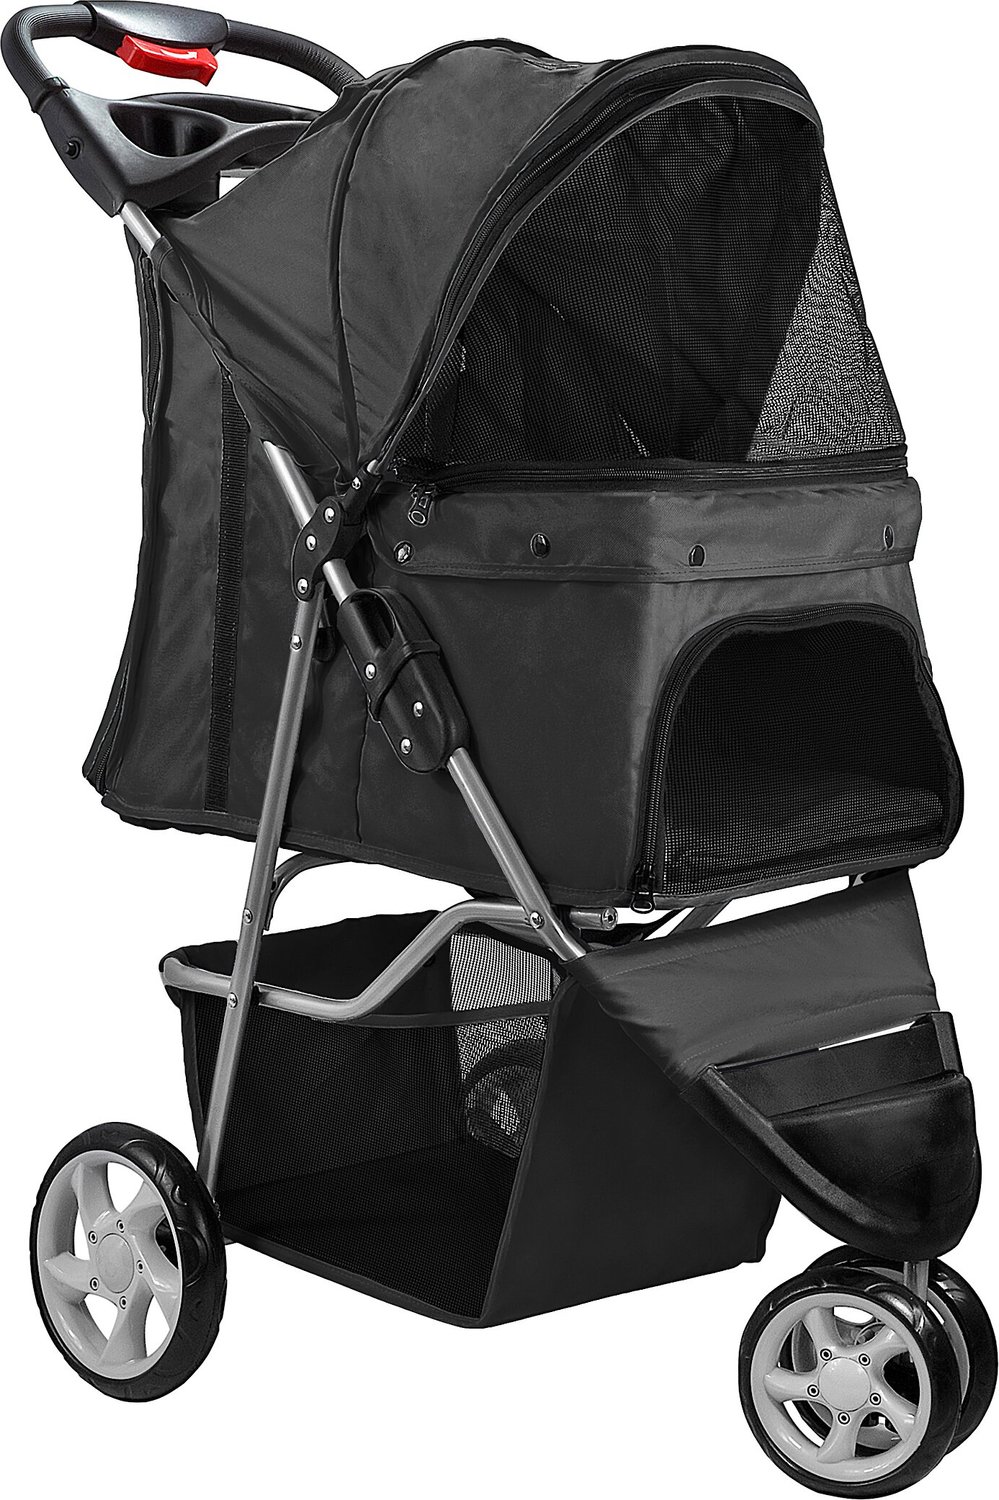 black dog stroller